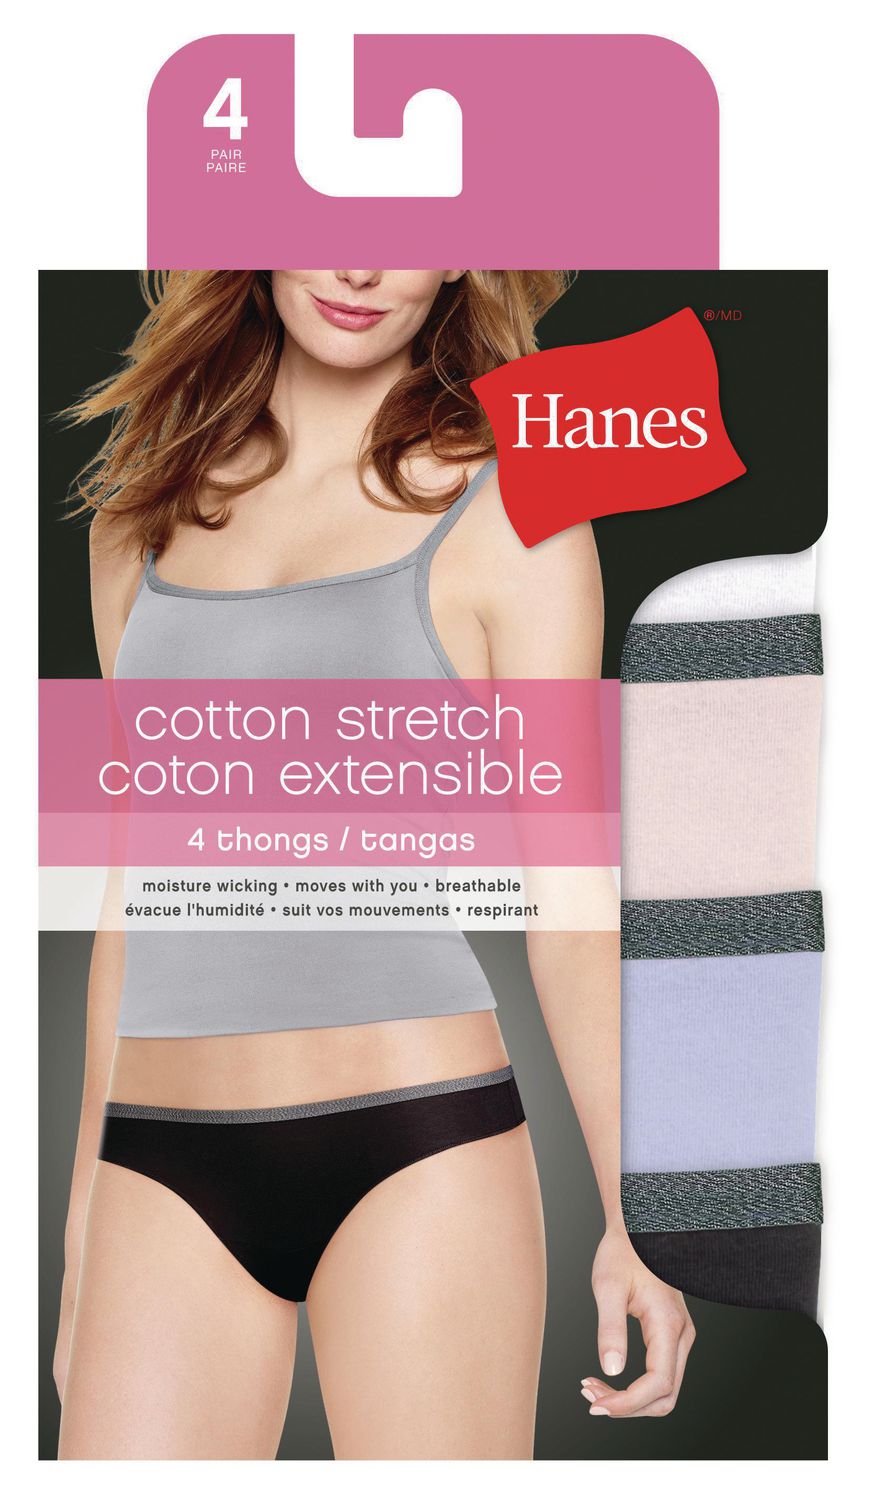 Stanfield's Men's Cotton Stretch Underwear Briefs -3 Pack 